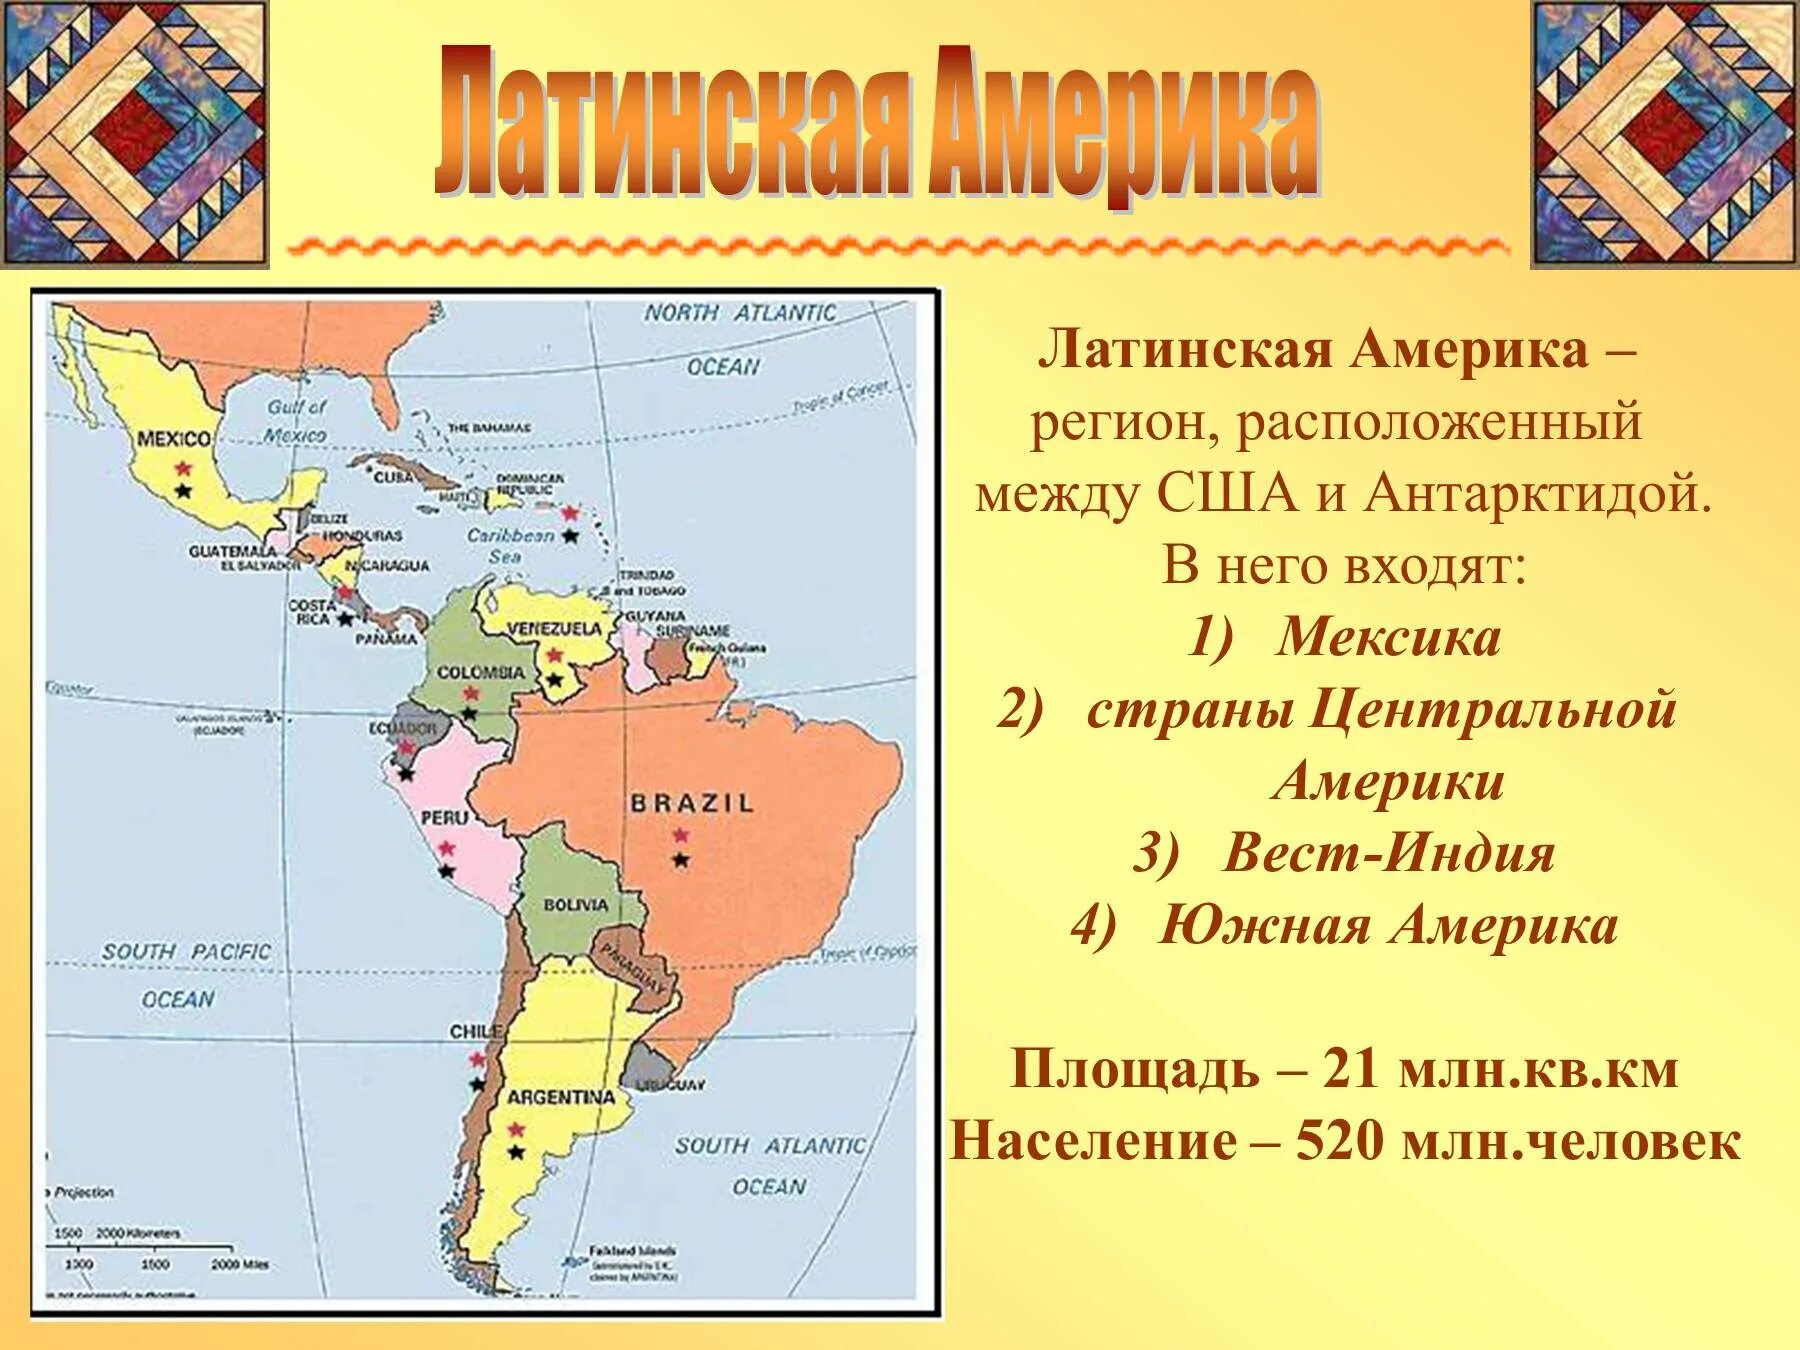 Латинская америка 4 страны. Политическая карта Латинской Америки субрегионы. Состав Латинской Америки карта. Государства на территории Латинской Америки. Границы всех государств Латинской Америки и их столицы на карте.